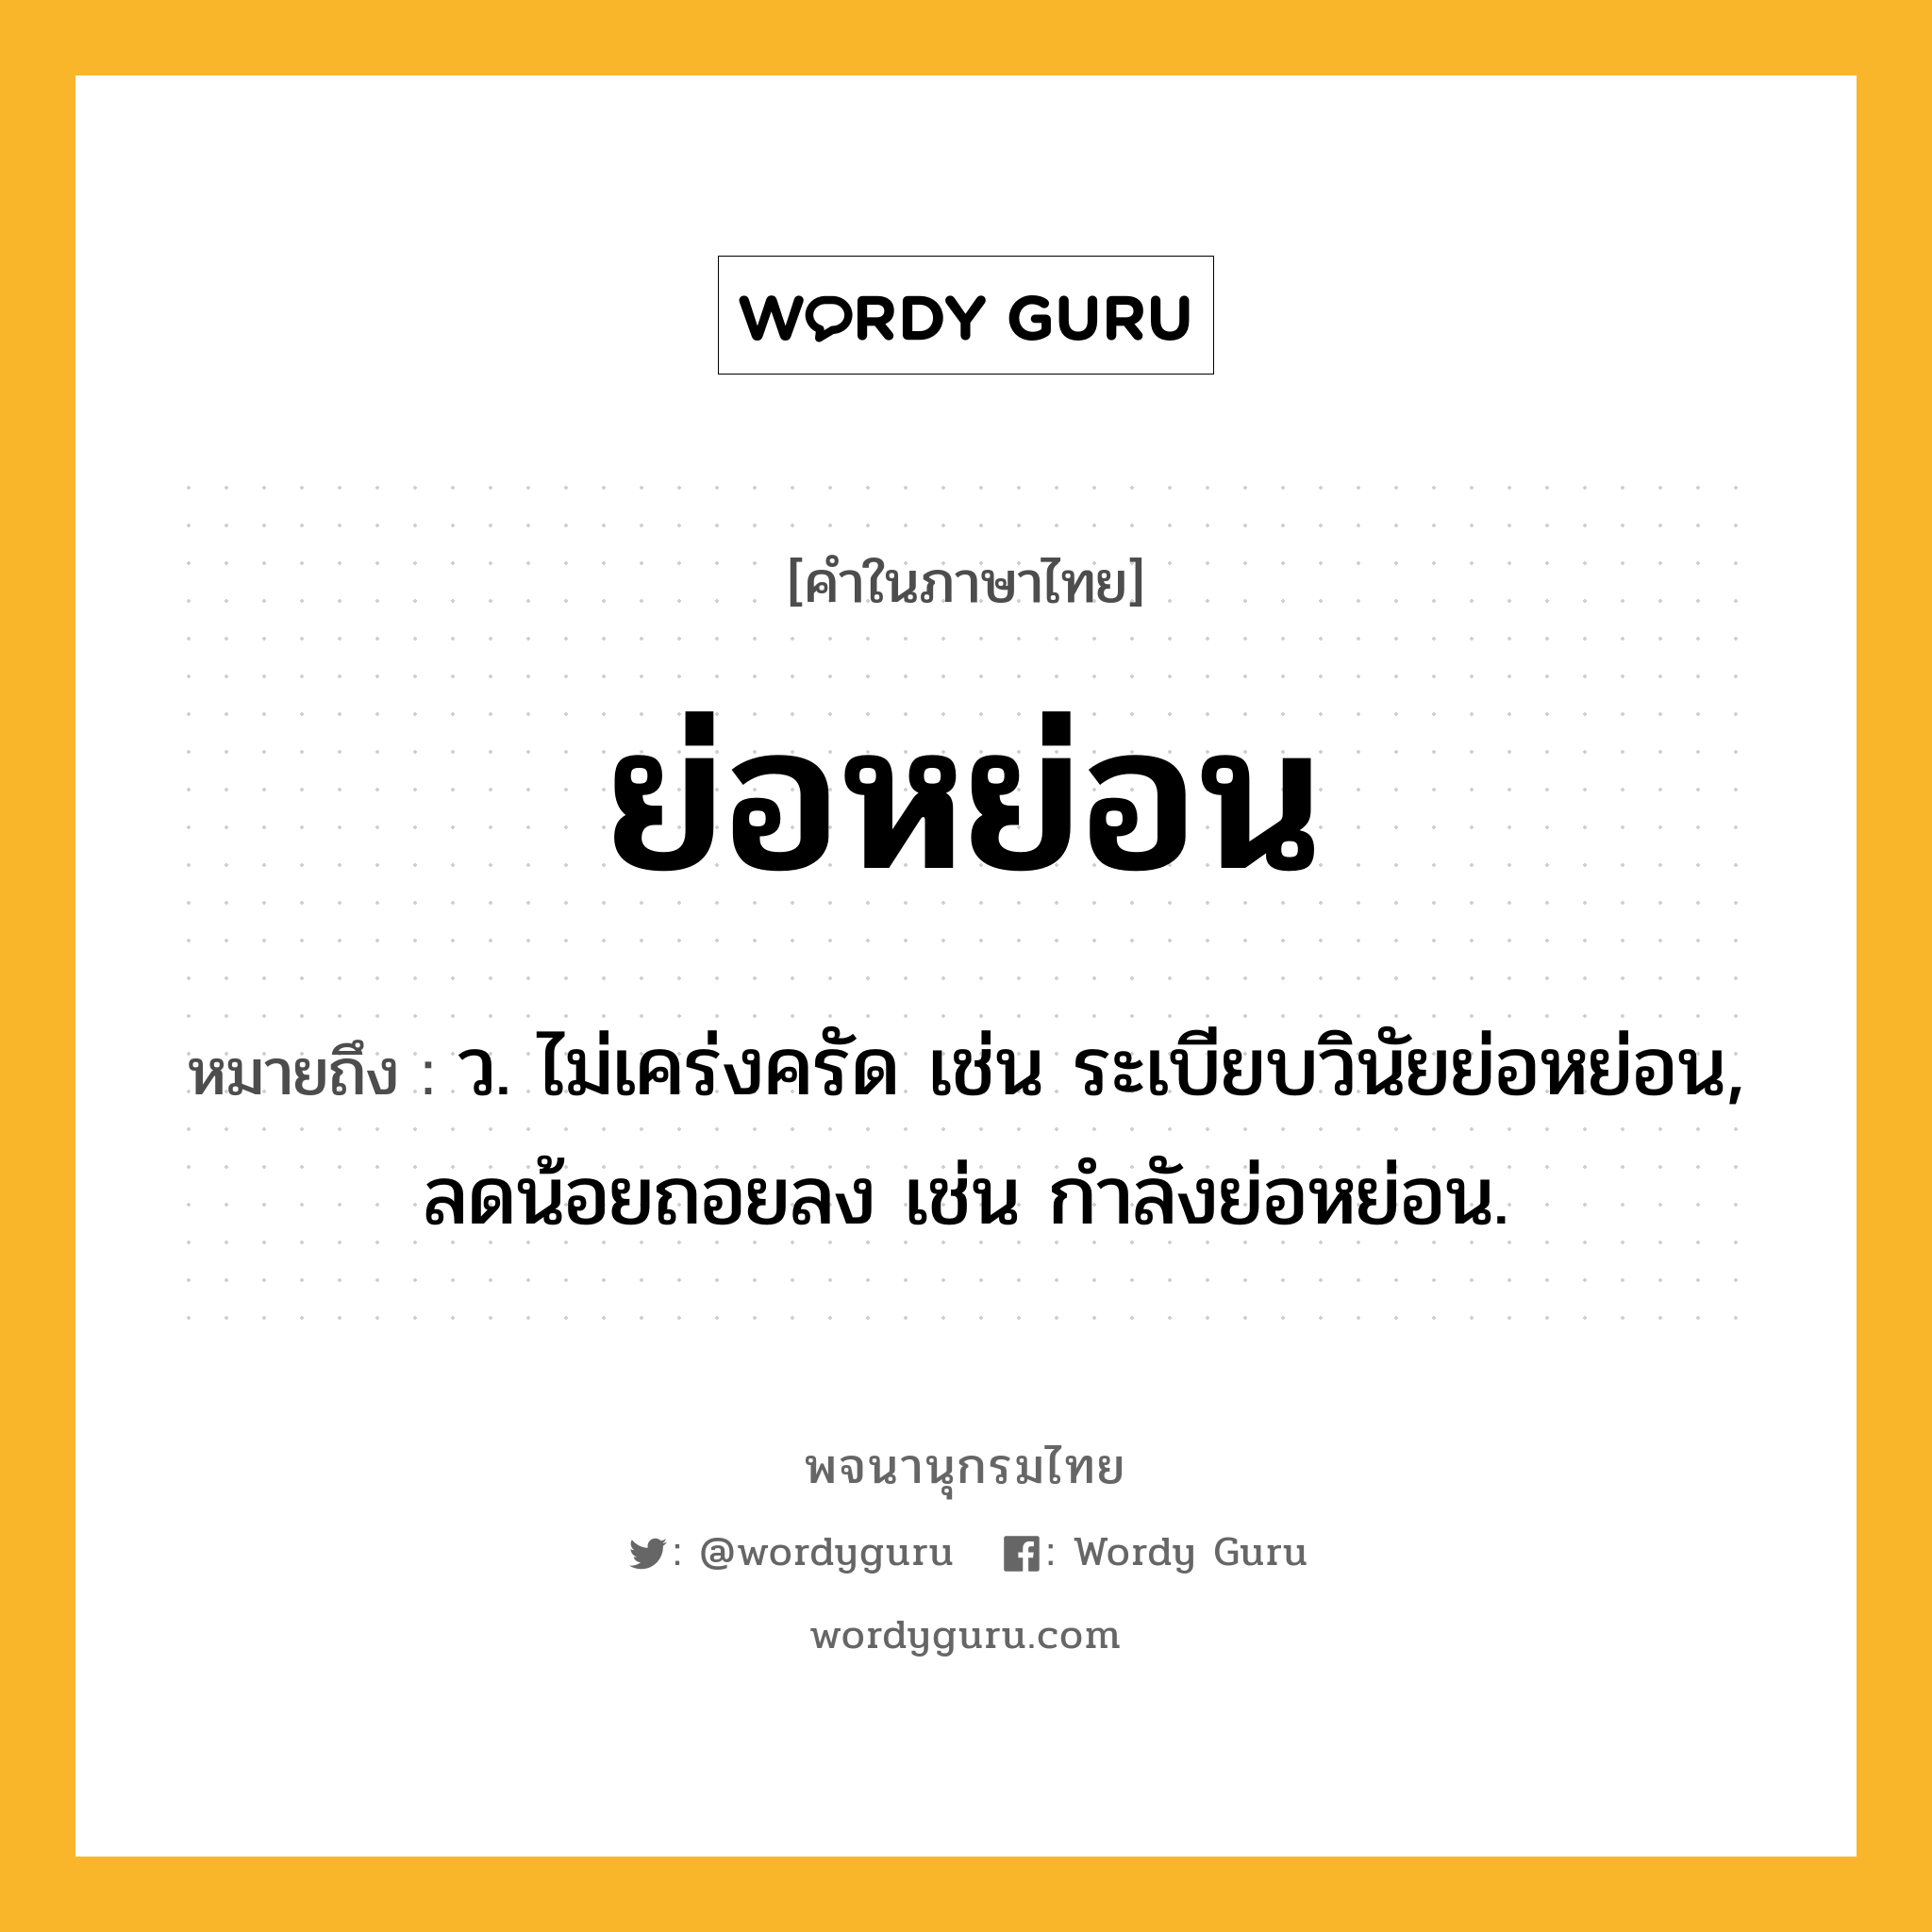 ย่อหย่อน ความหมาย หมายถึงอะไร?, คำในภาษาไทย ย่อหย่อน หมายถึง ว. ไม่เคร่งครัด เช่น ระเบียบวินัยย่อหย่อน, ลดน้อยถอยลง เช่น กำลังย่อหย่อน.